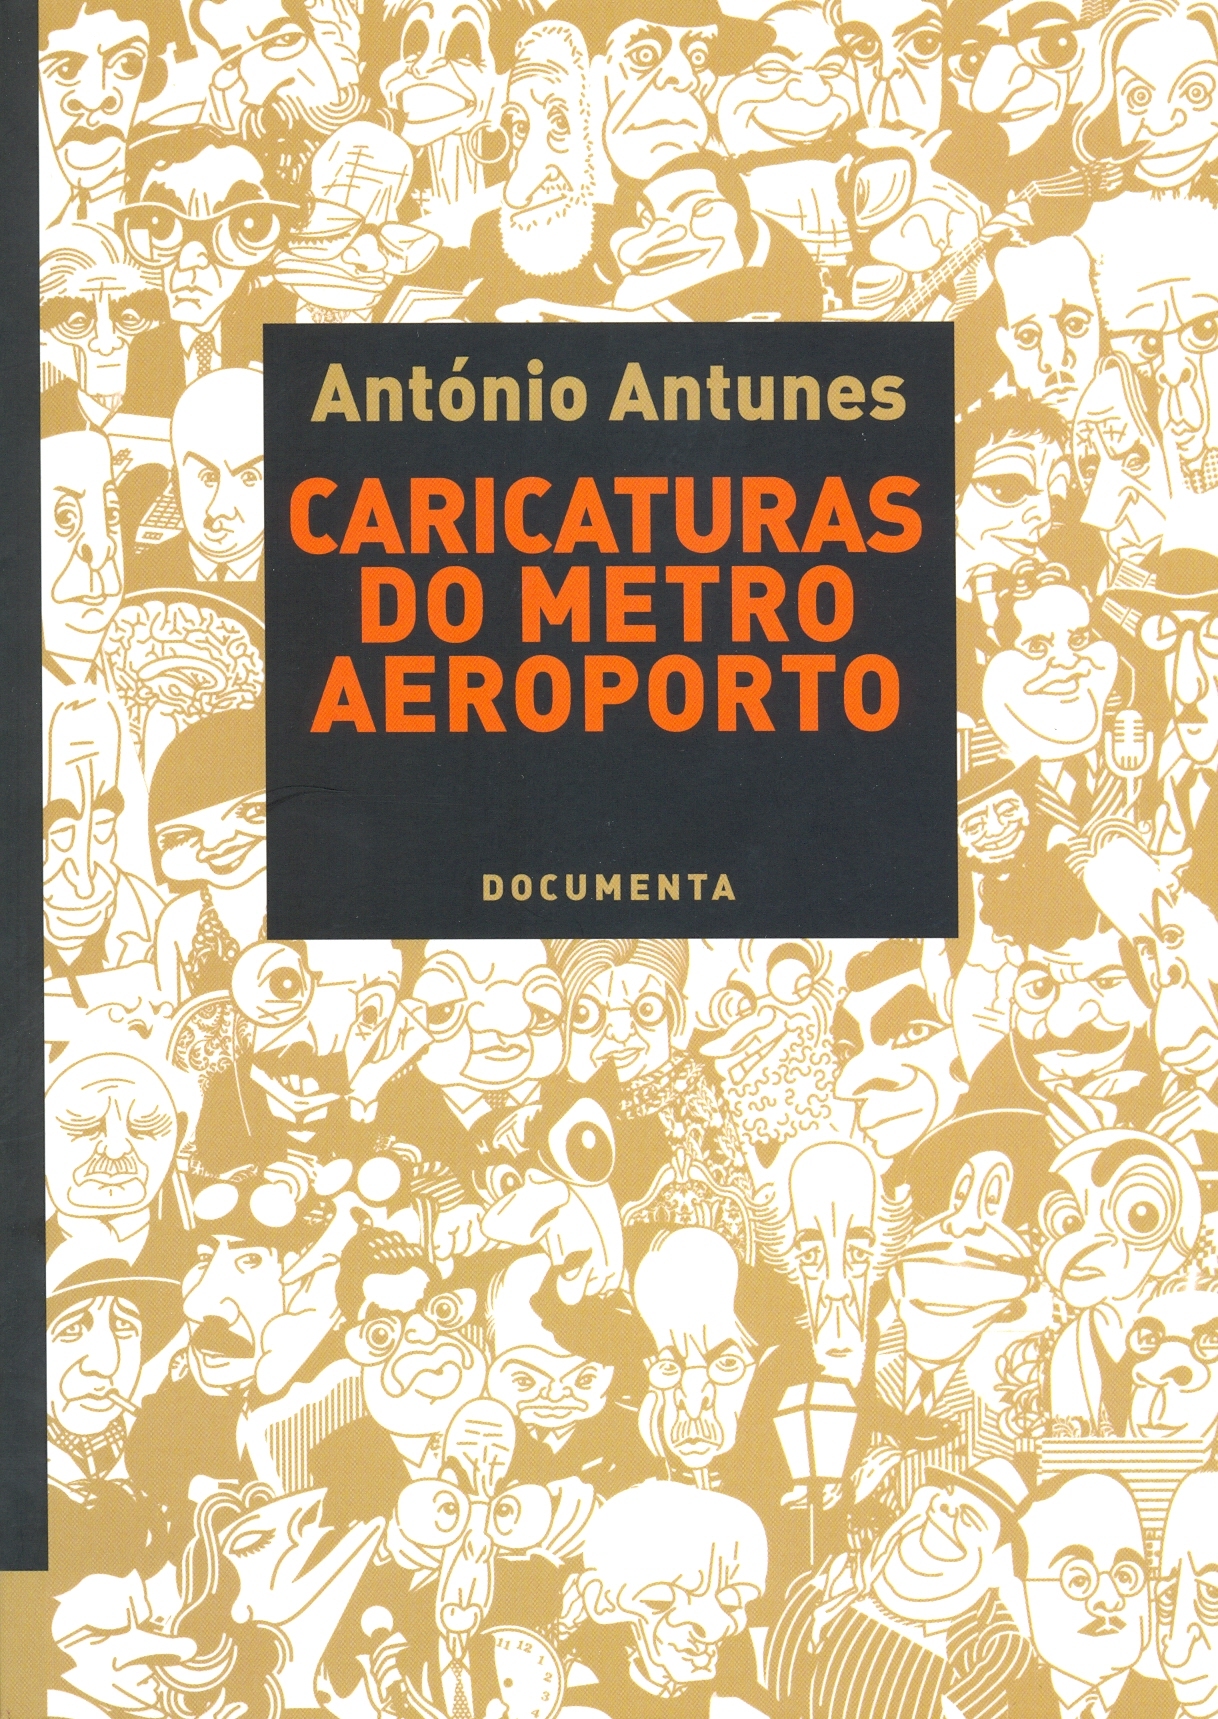 António Antunes - Caricaturas do metro do Aeroporto